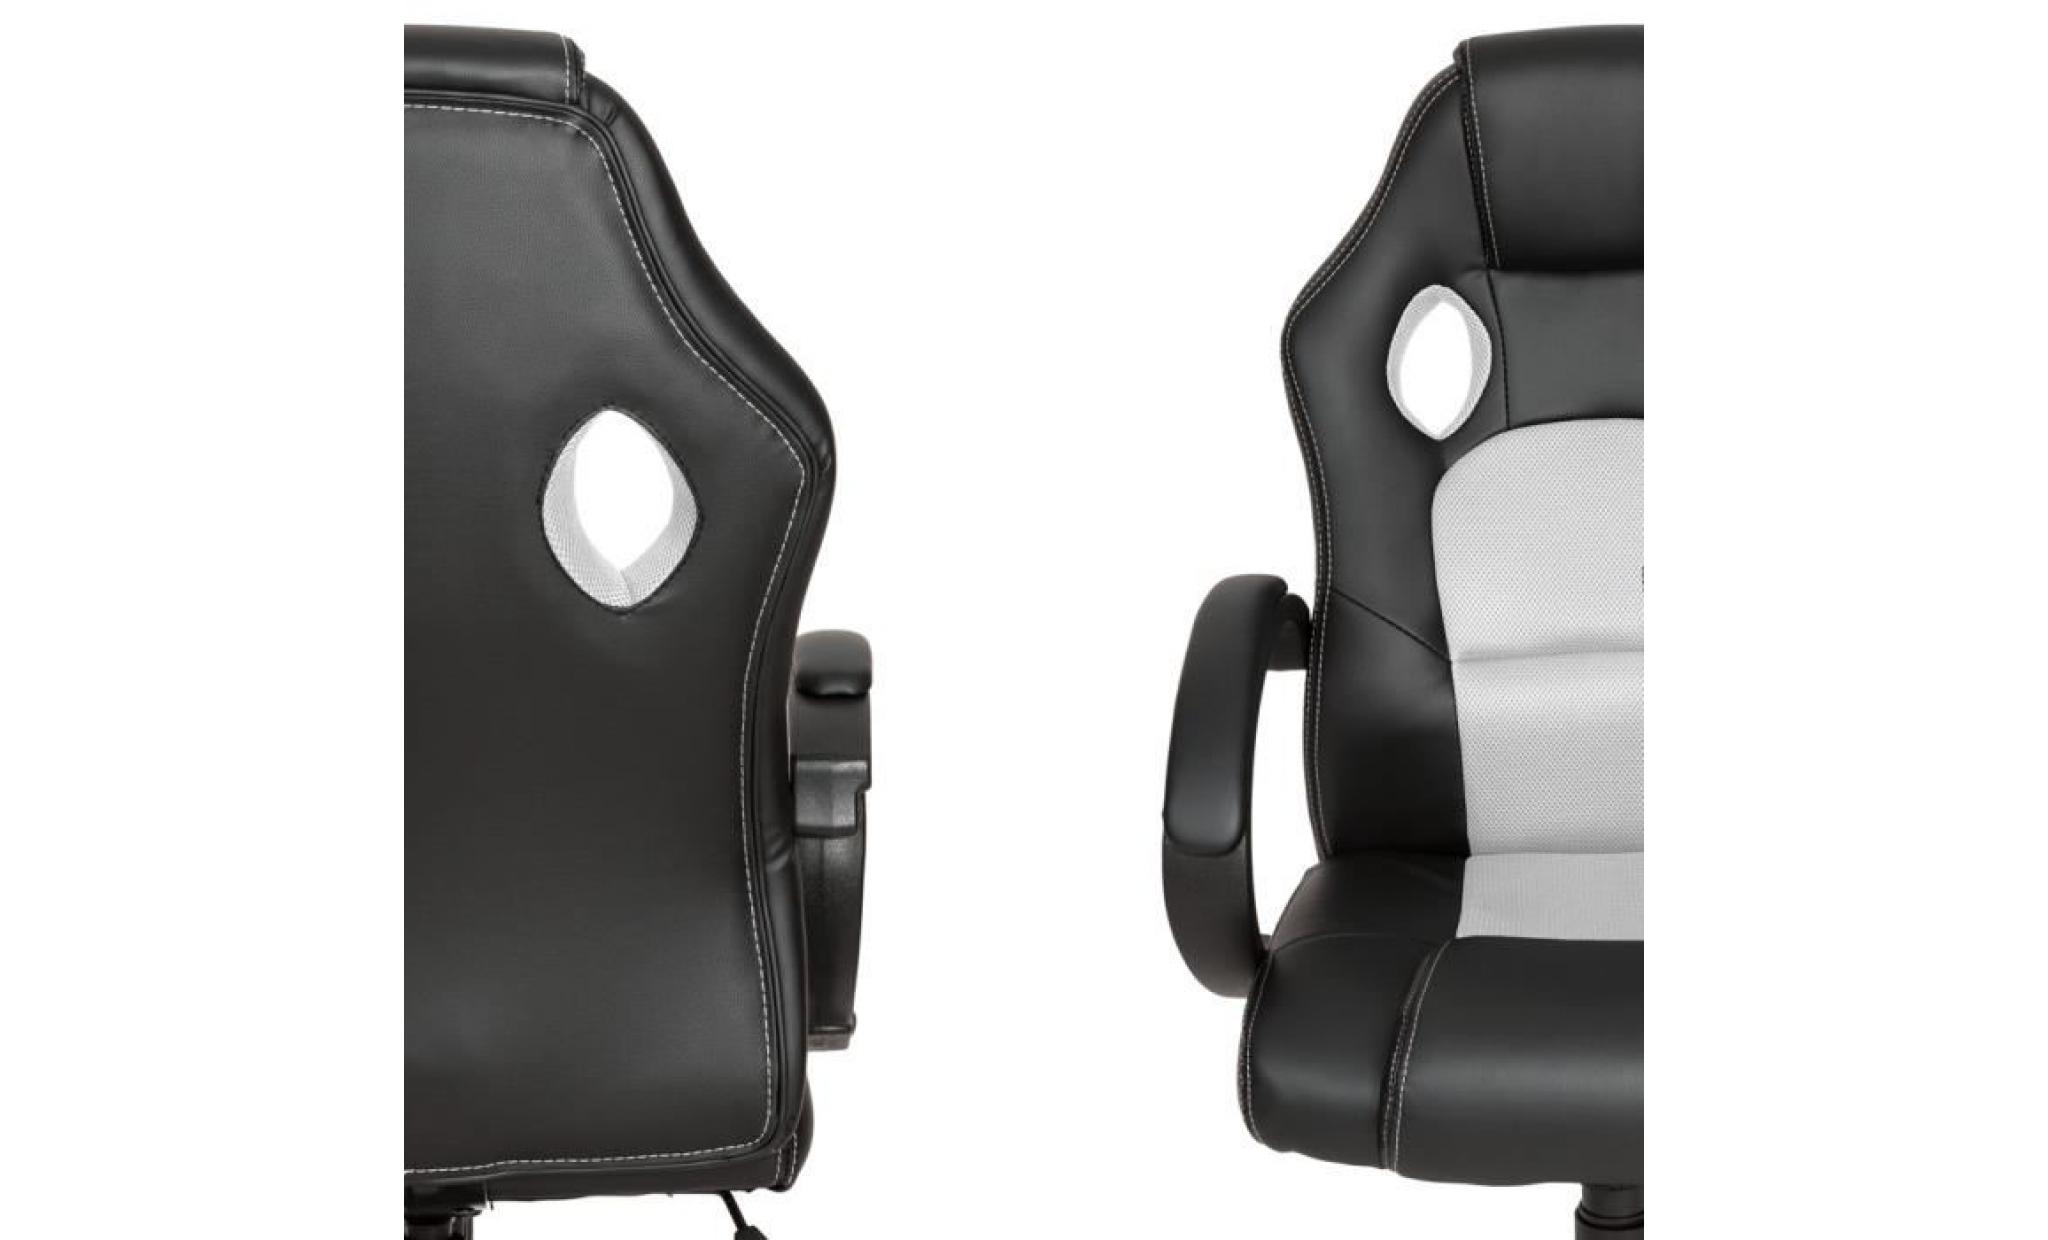 tectake chaise de bureau fauteuil de bureau racing sport noir / blanc rembourrage Épais   hauteur réglable   pivotante pas cher